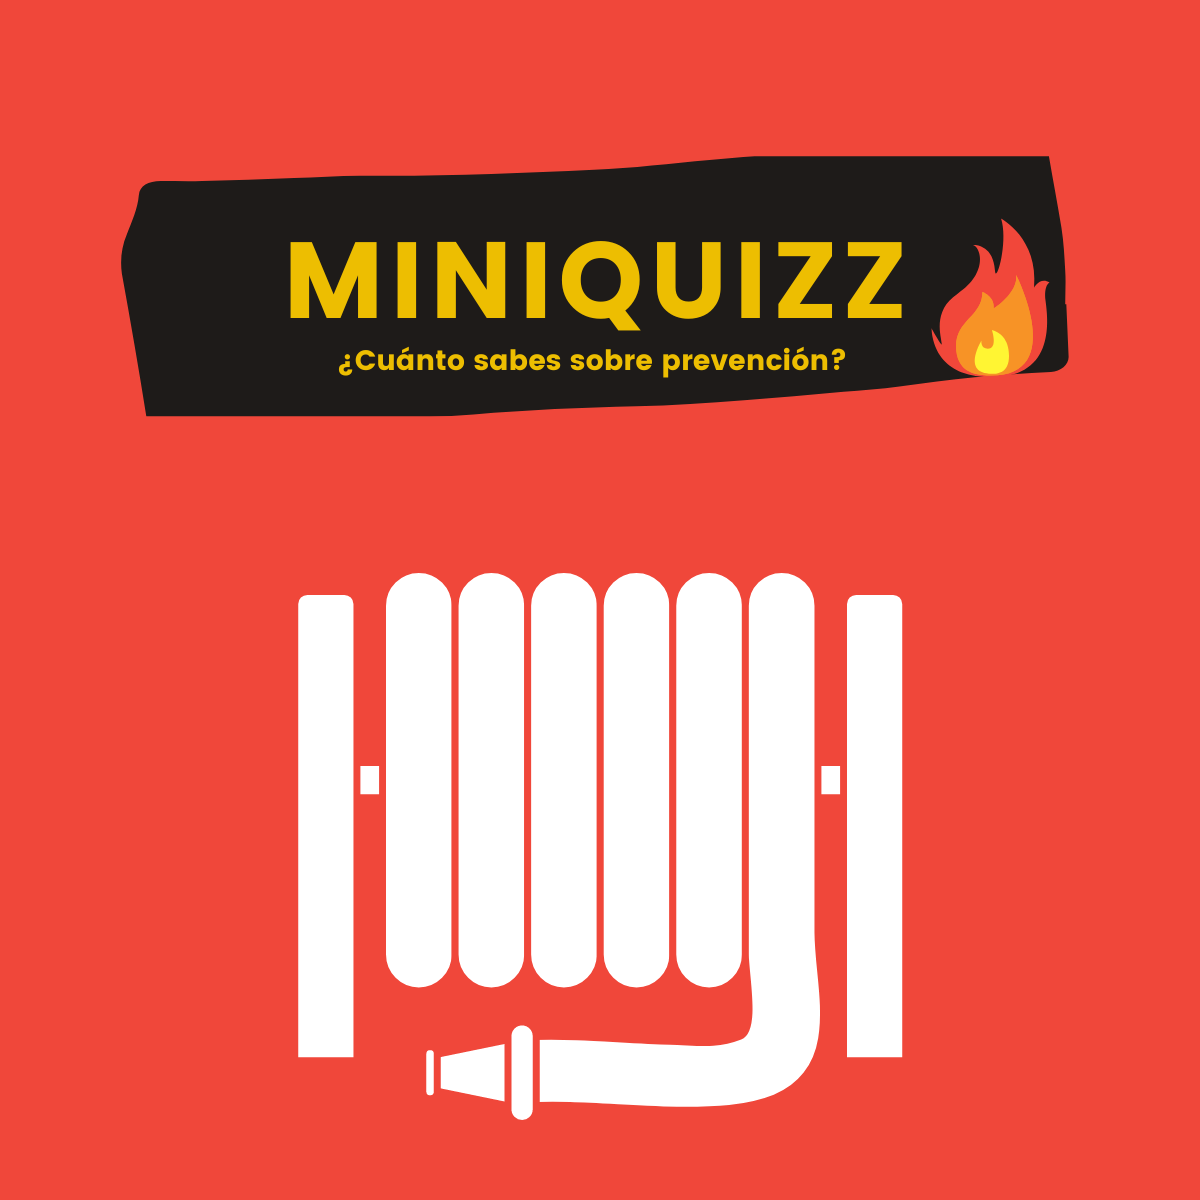 Miniquizz: Extinción de incendios